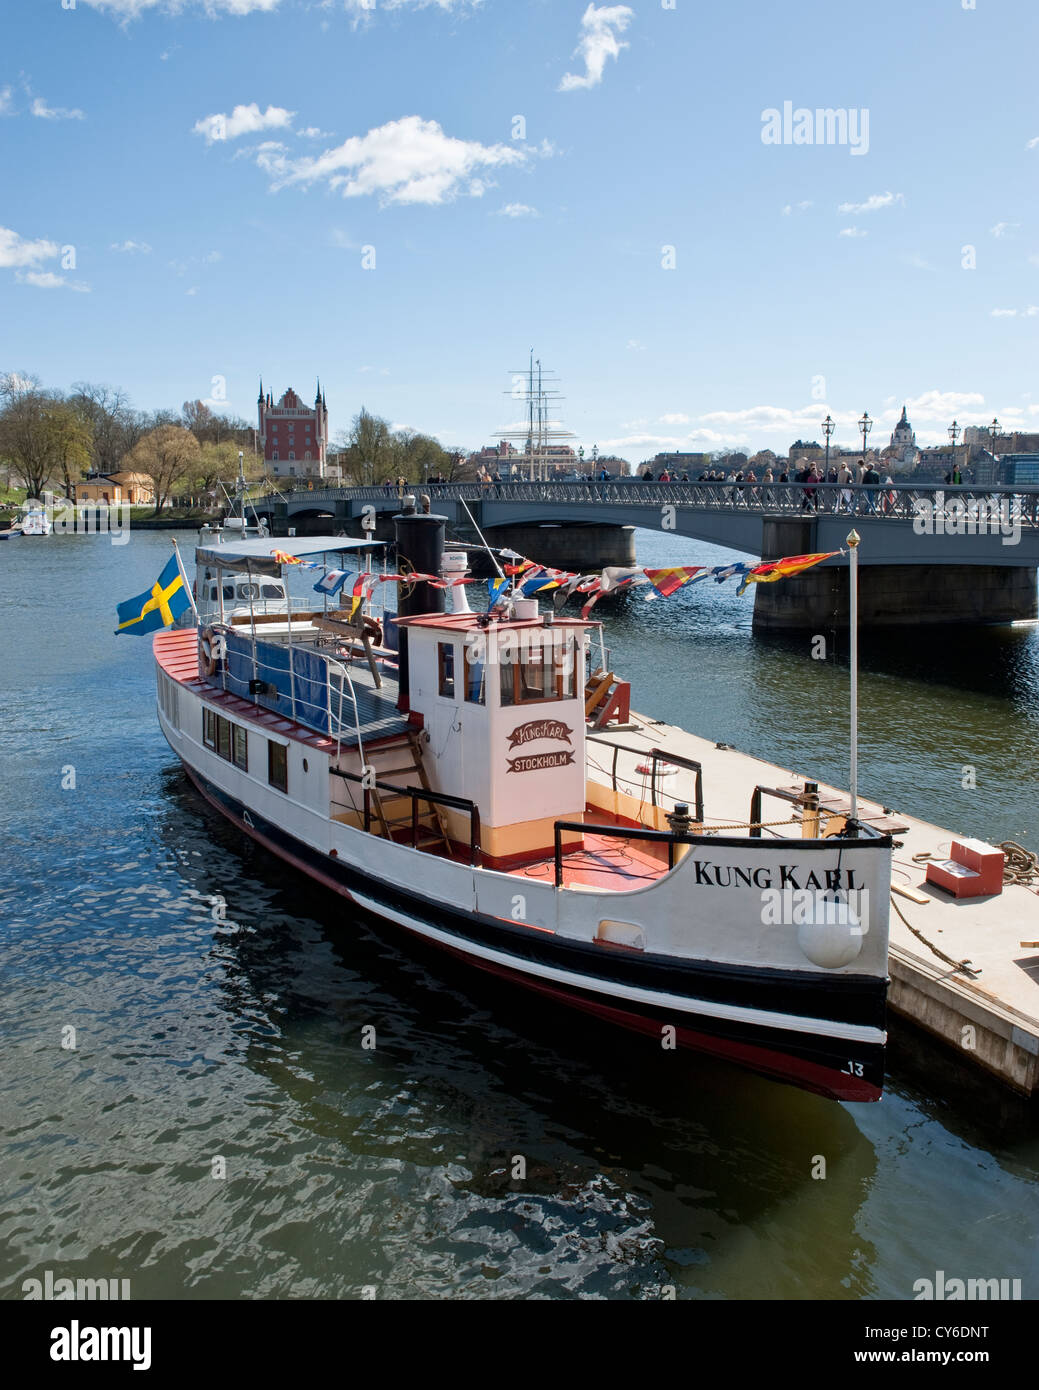 Steamboat Kung Karl amarré à côté du pont de l'île de Skeppsholmen, dans le centre de Stockholm, Suède Banque D'Images